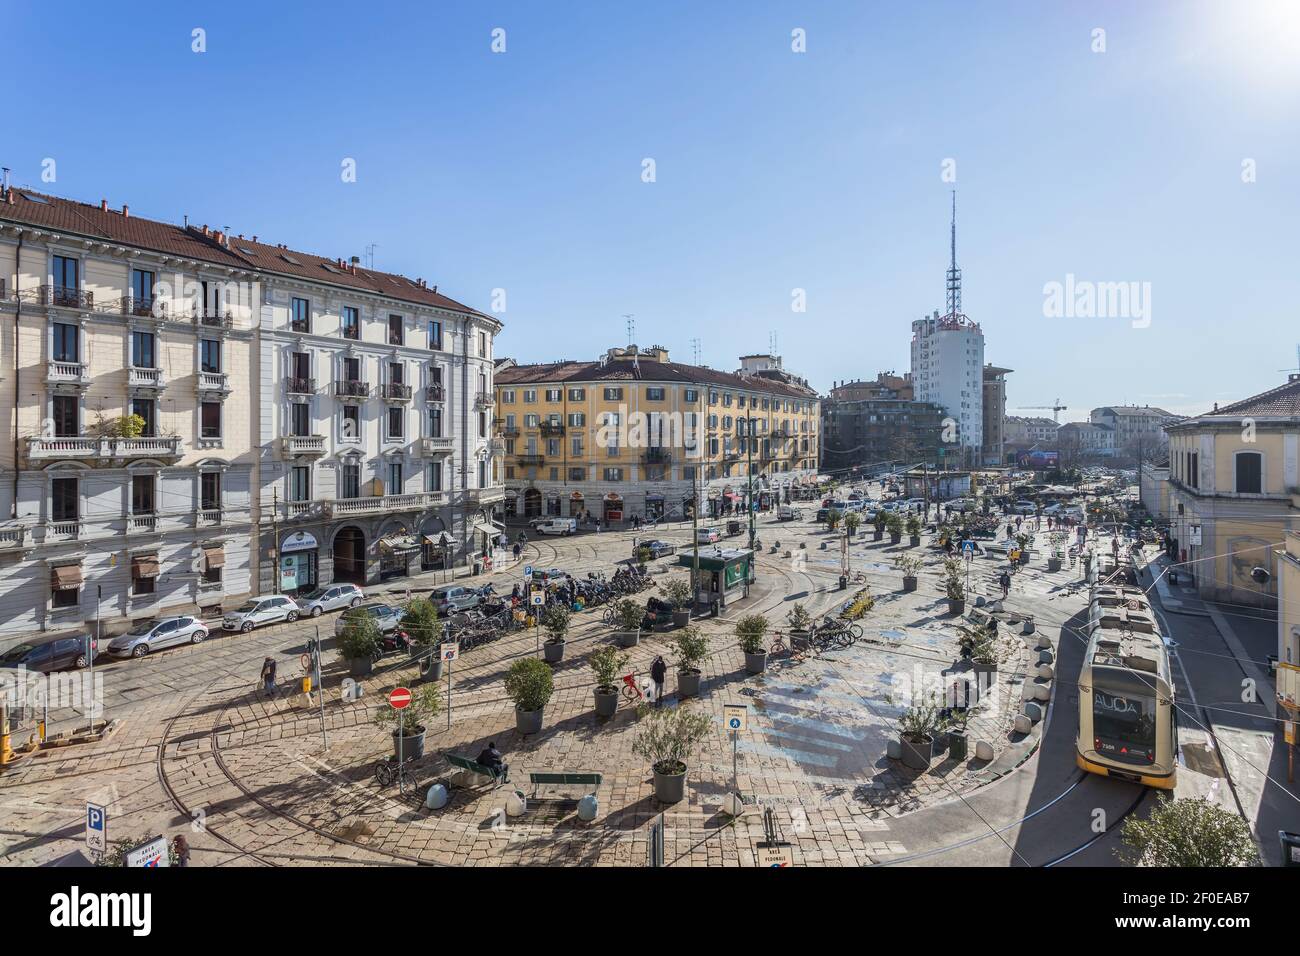 Porta Genova station in Milan, ITALY - February 8, 2021. Stock Photo